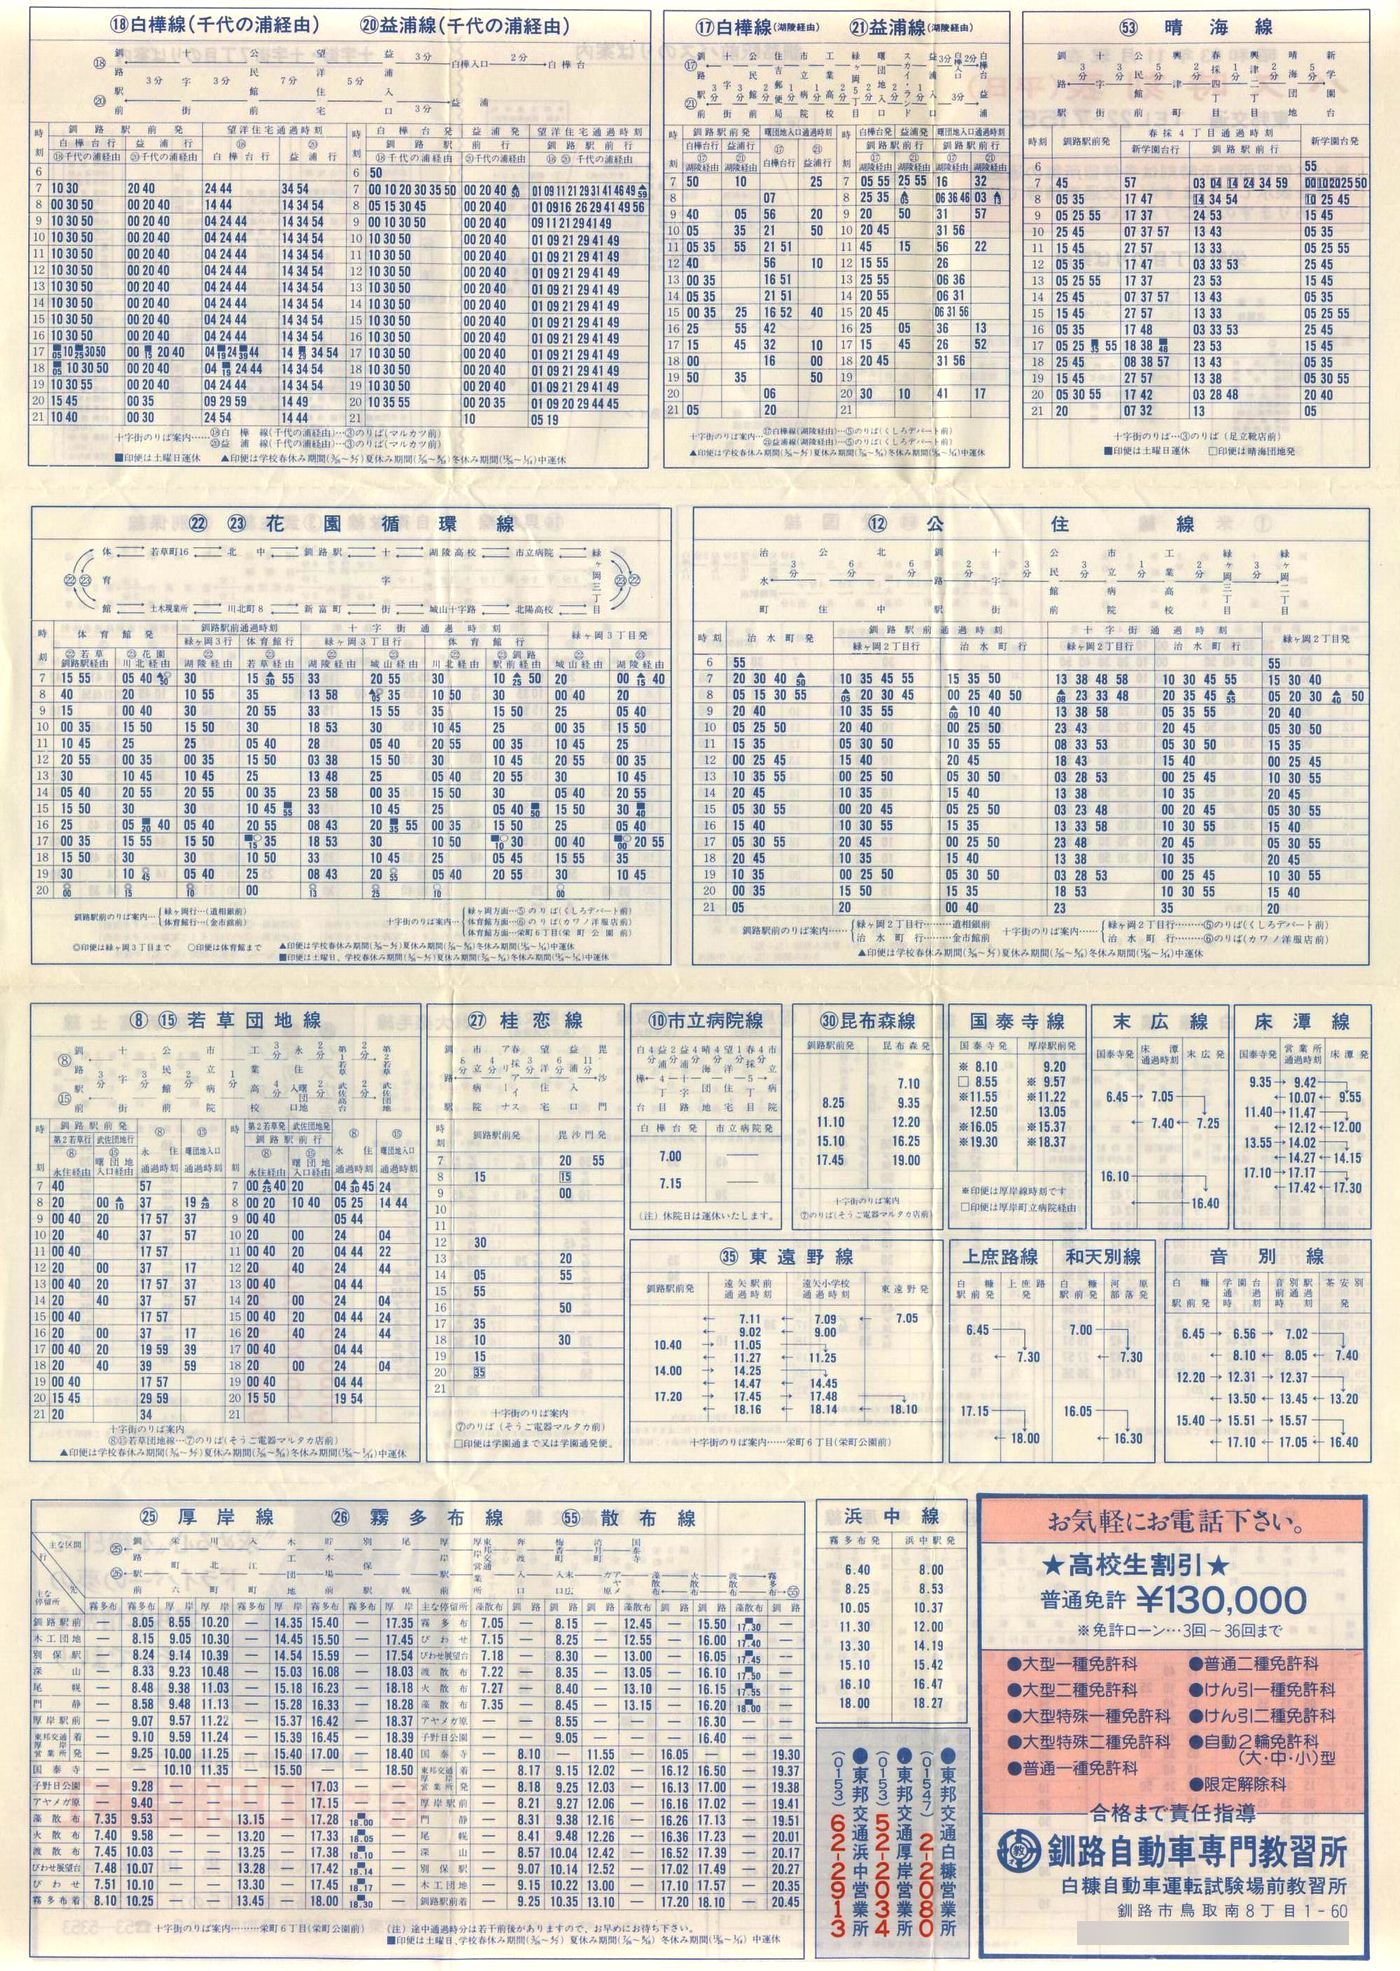 1988-11現在_東邦交通_平日時刻表裏面